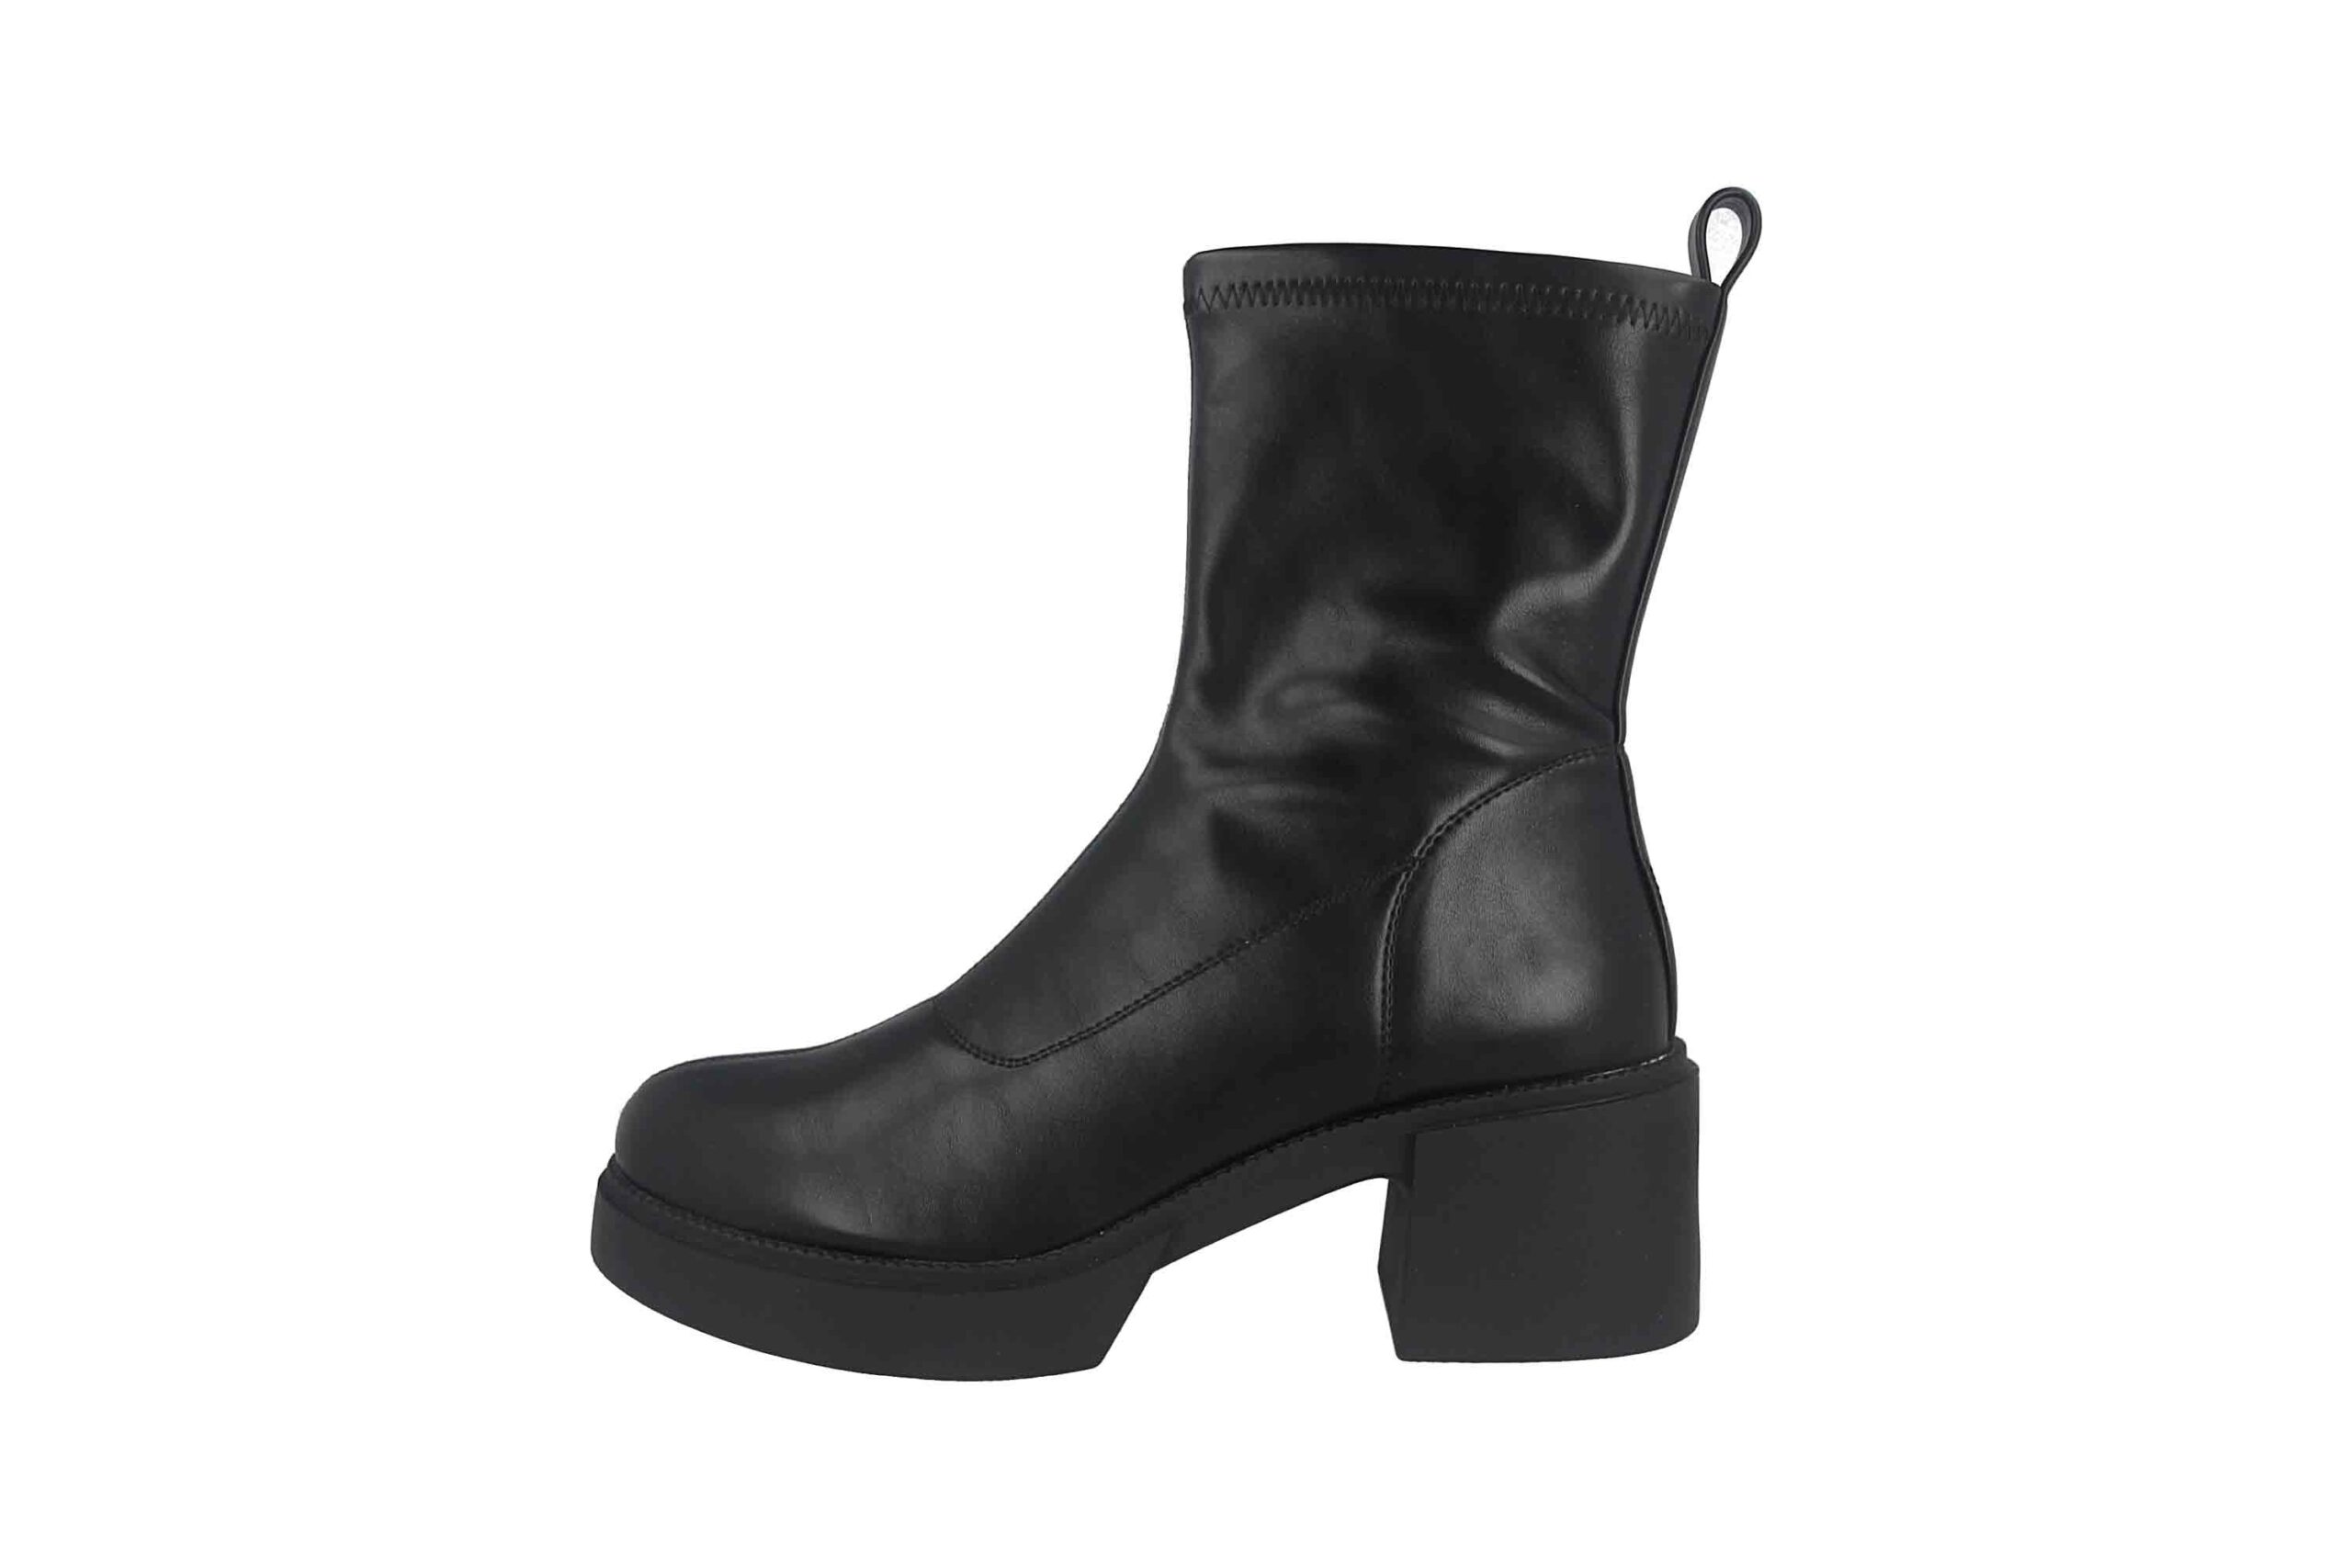 Fitters Footwear Mara Stiefeletten in Übergrößen Schwarz 2TT0301401 Black große Damenschuhe